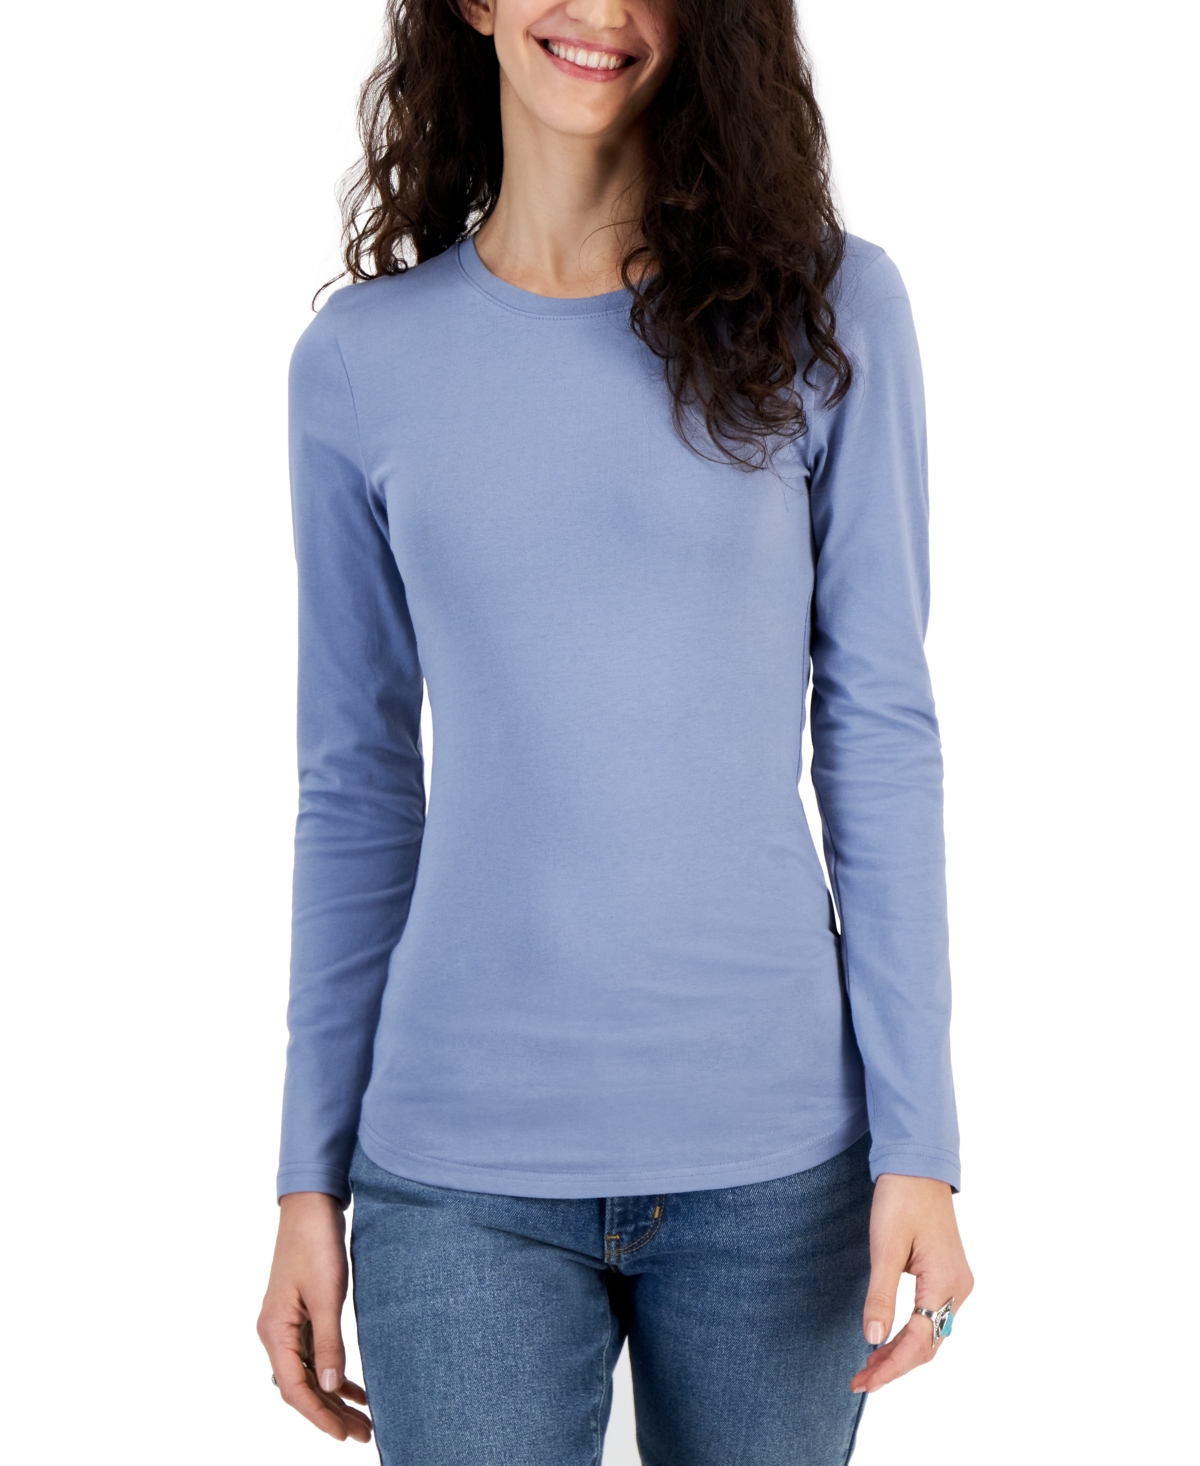 Aveto Juniors' Long-Sleeve T-Shirt - Macy's